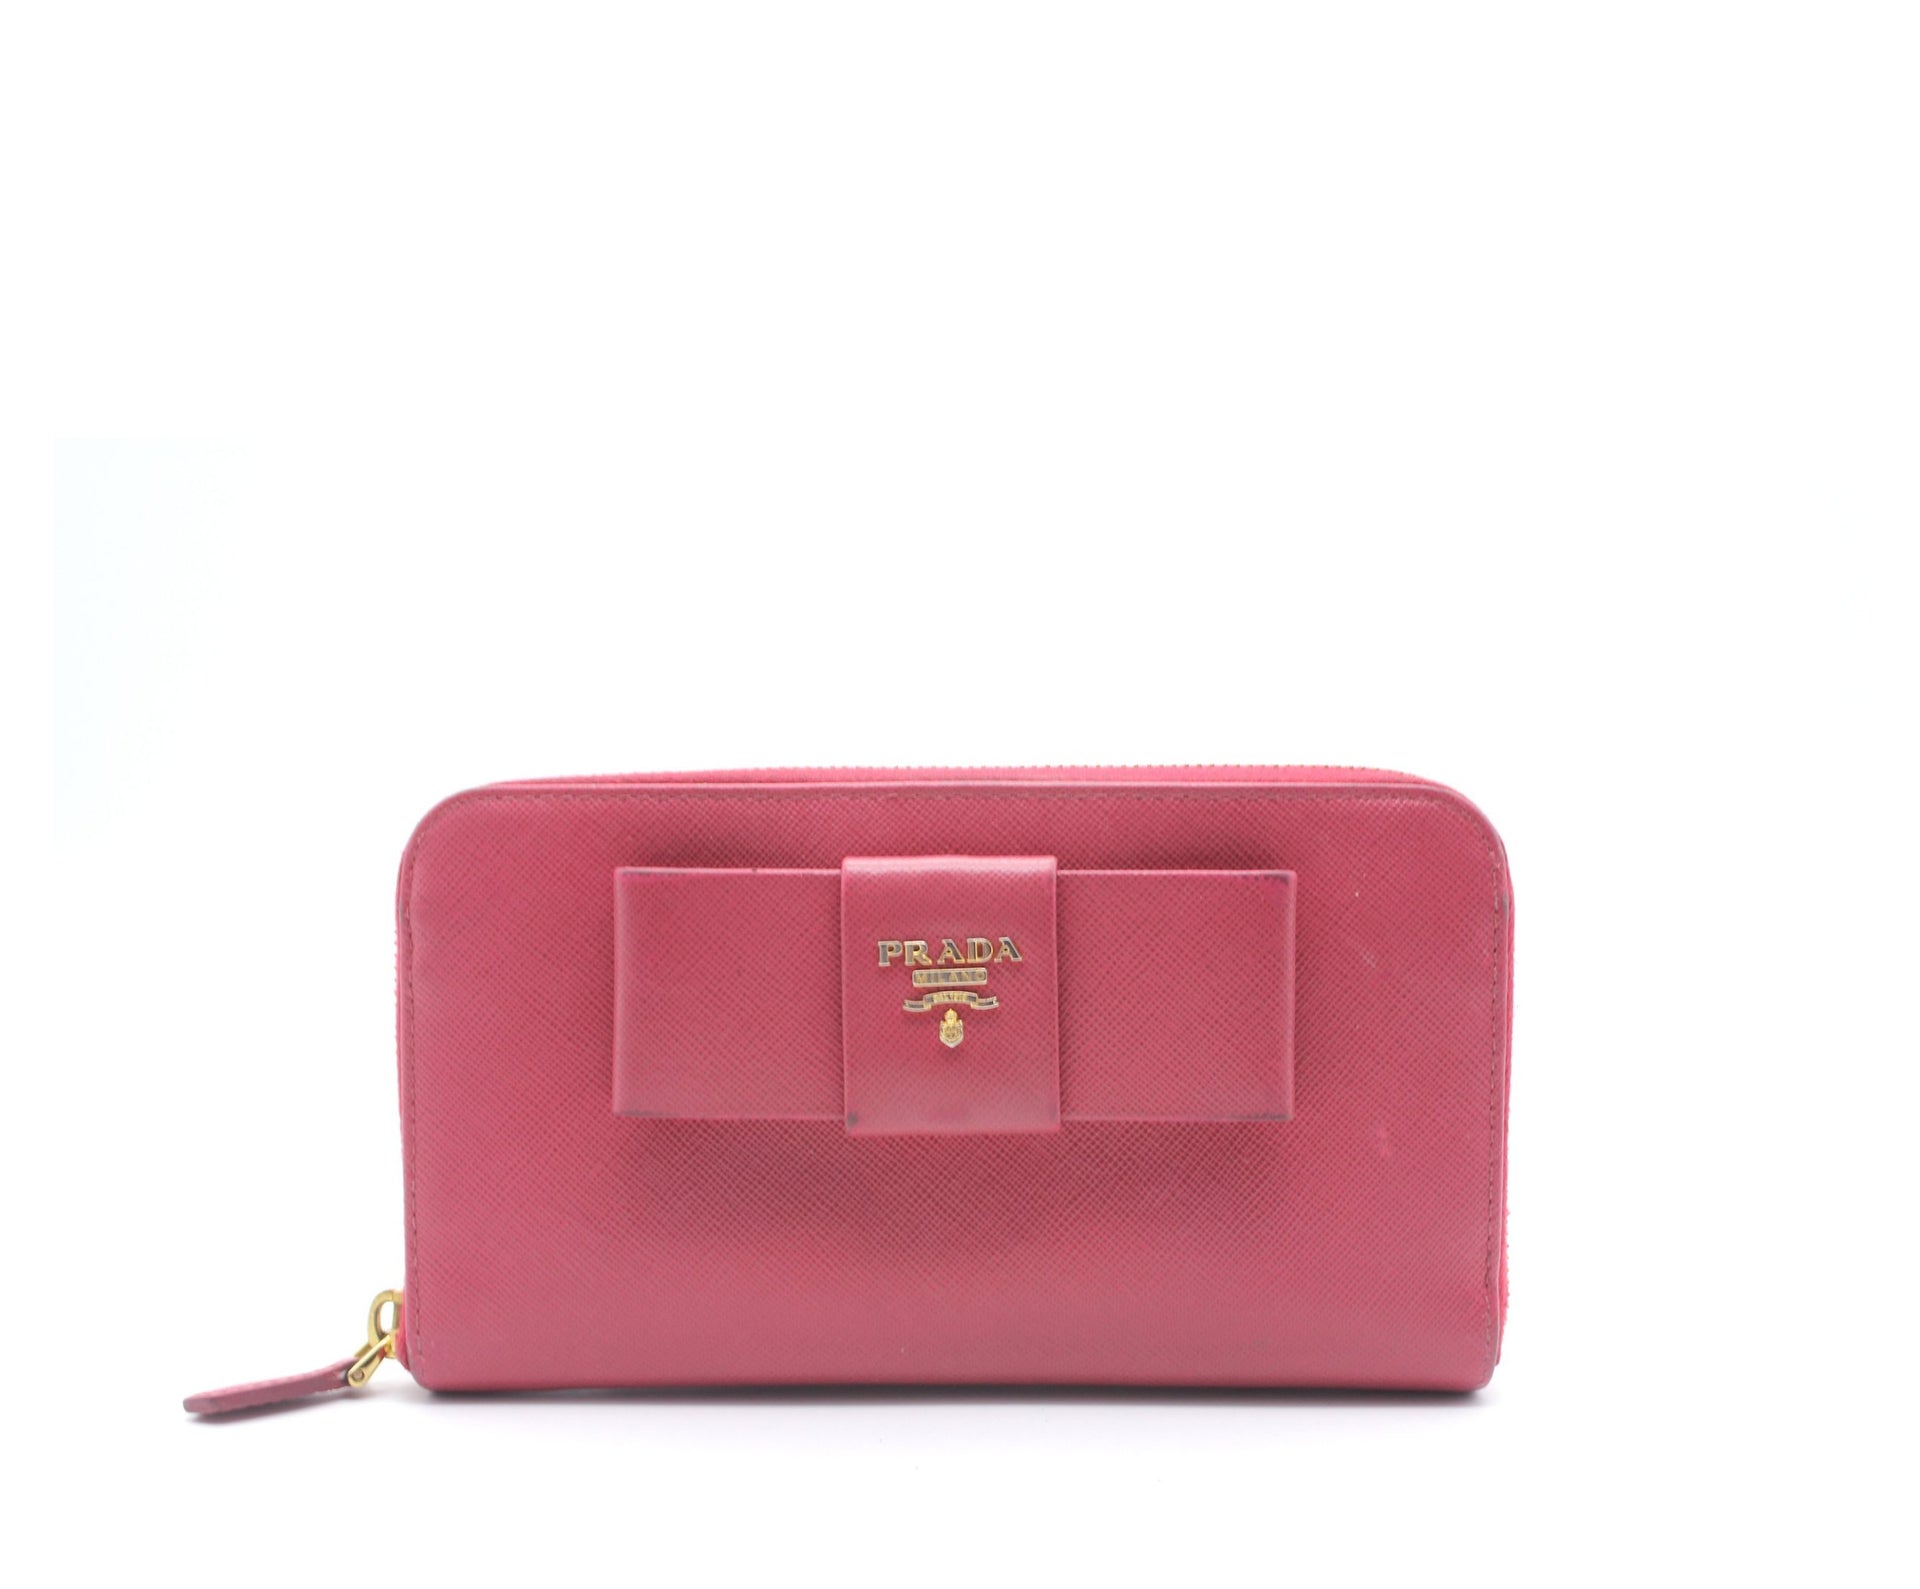 Arriba 89+ imagen pink prada wallet with bow